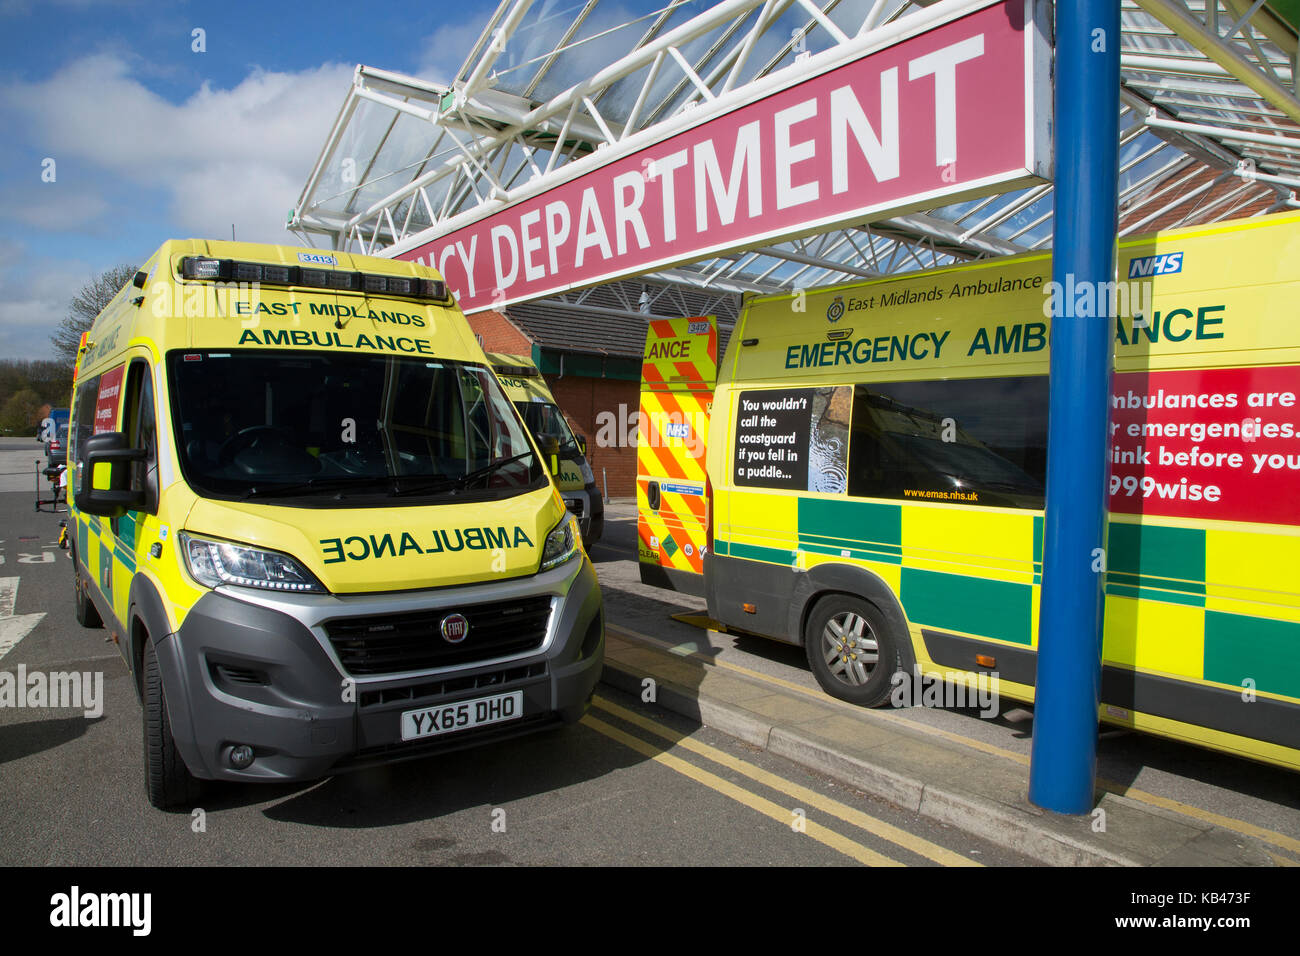 Ambulances paramédic en dehors de l'urgence de l'hôpital Banque D'Images